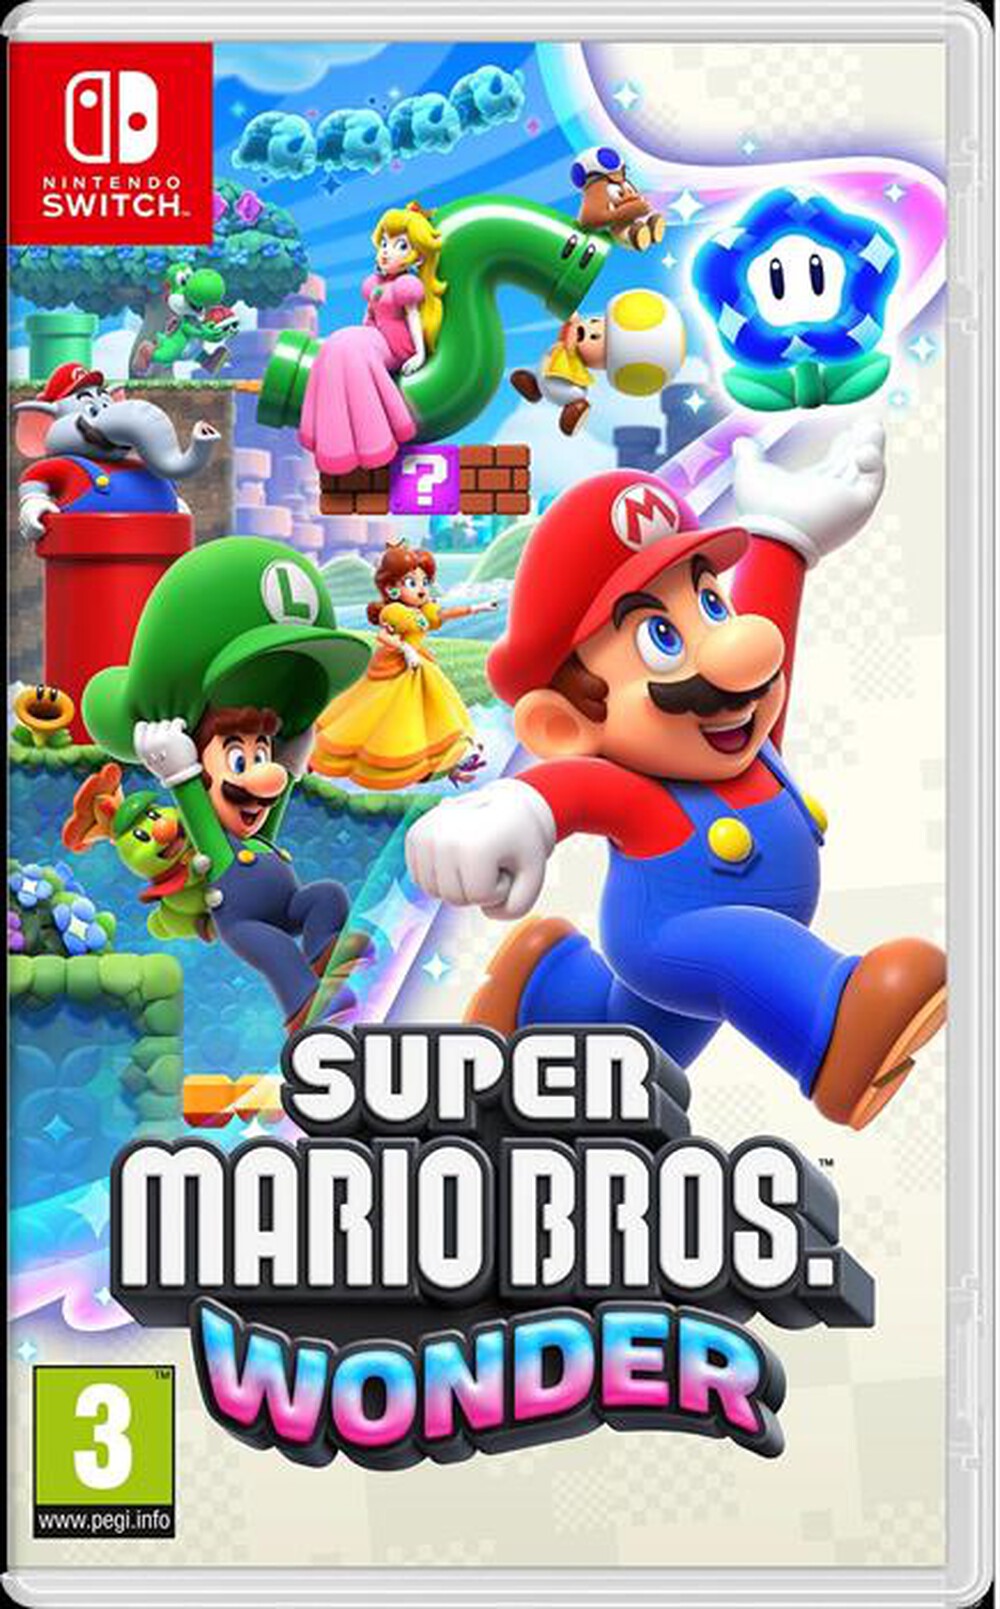 "NINTENDO - Super Mario Bros. Wonder"